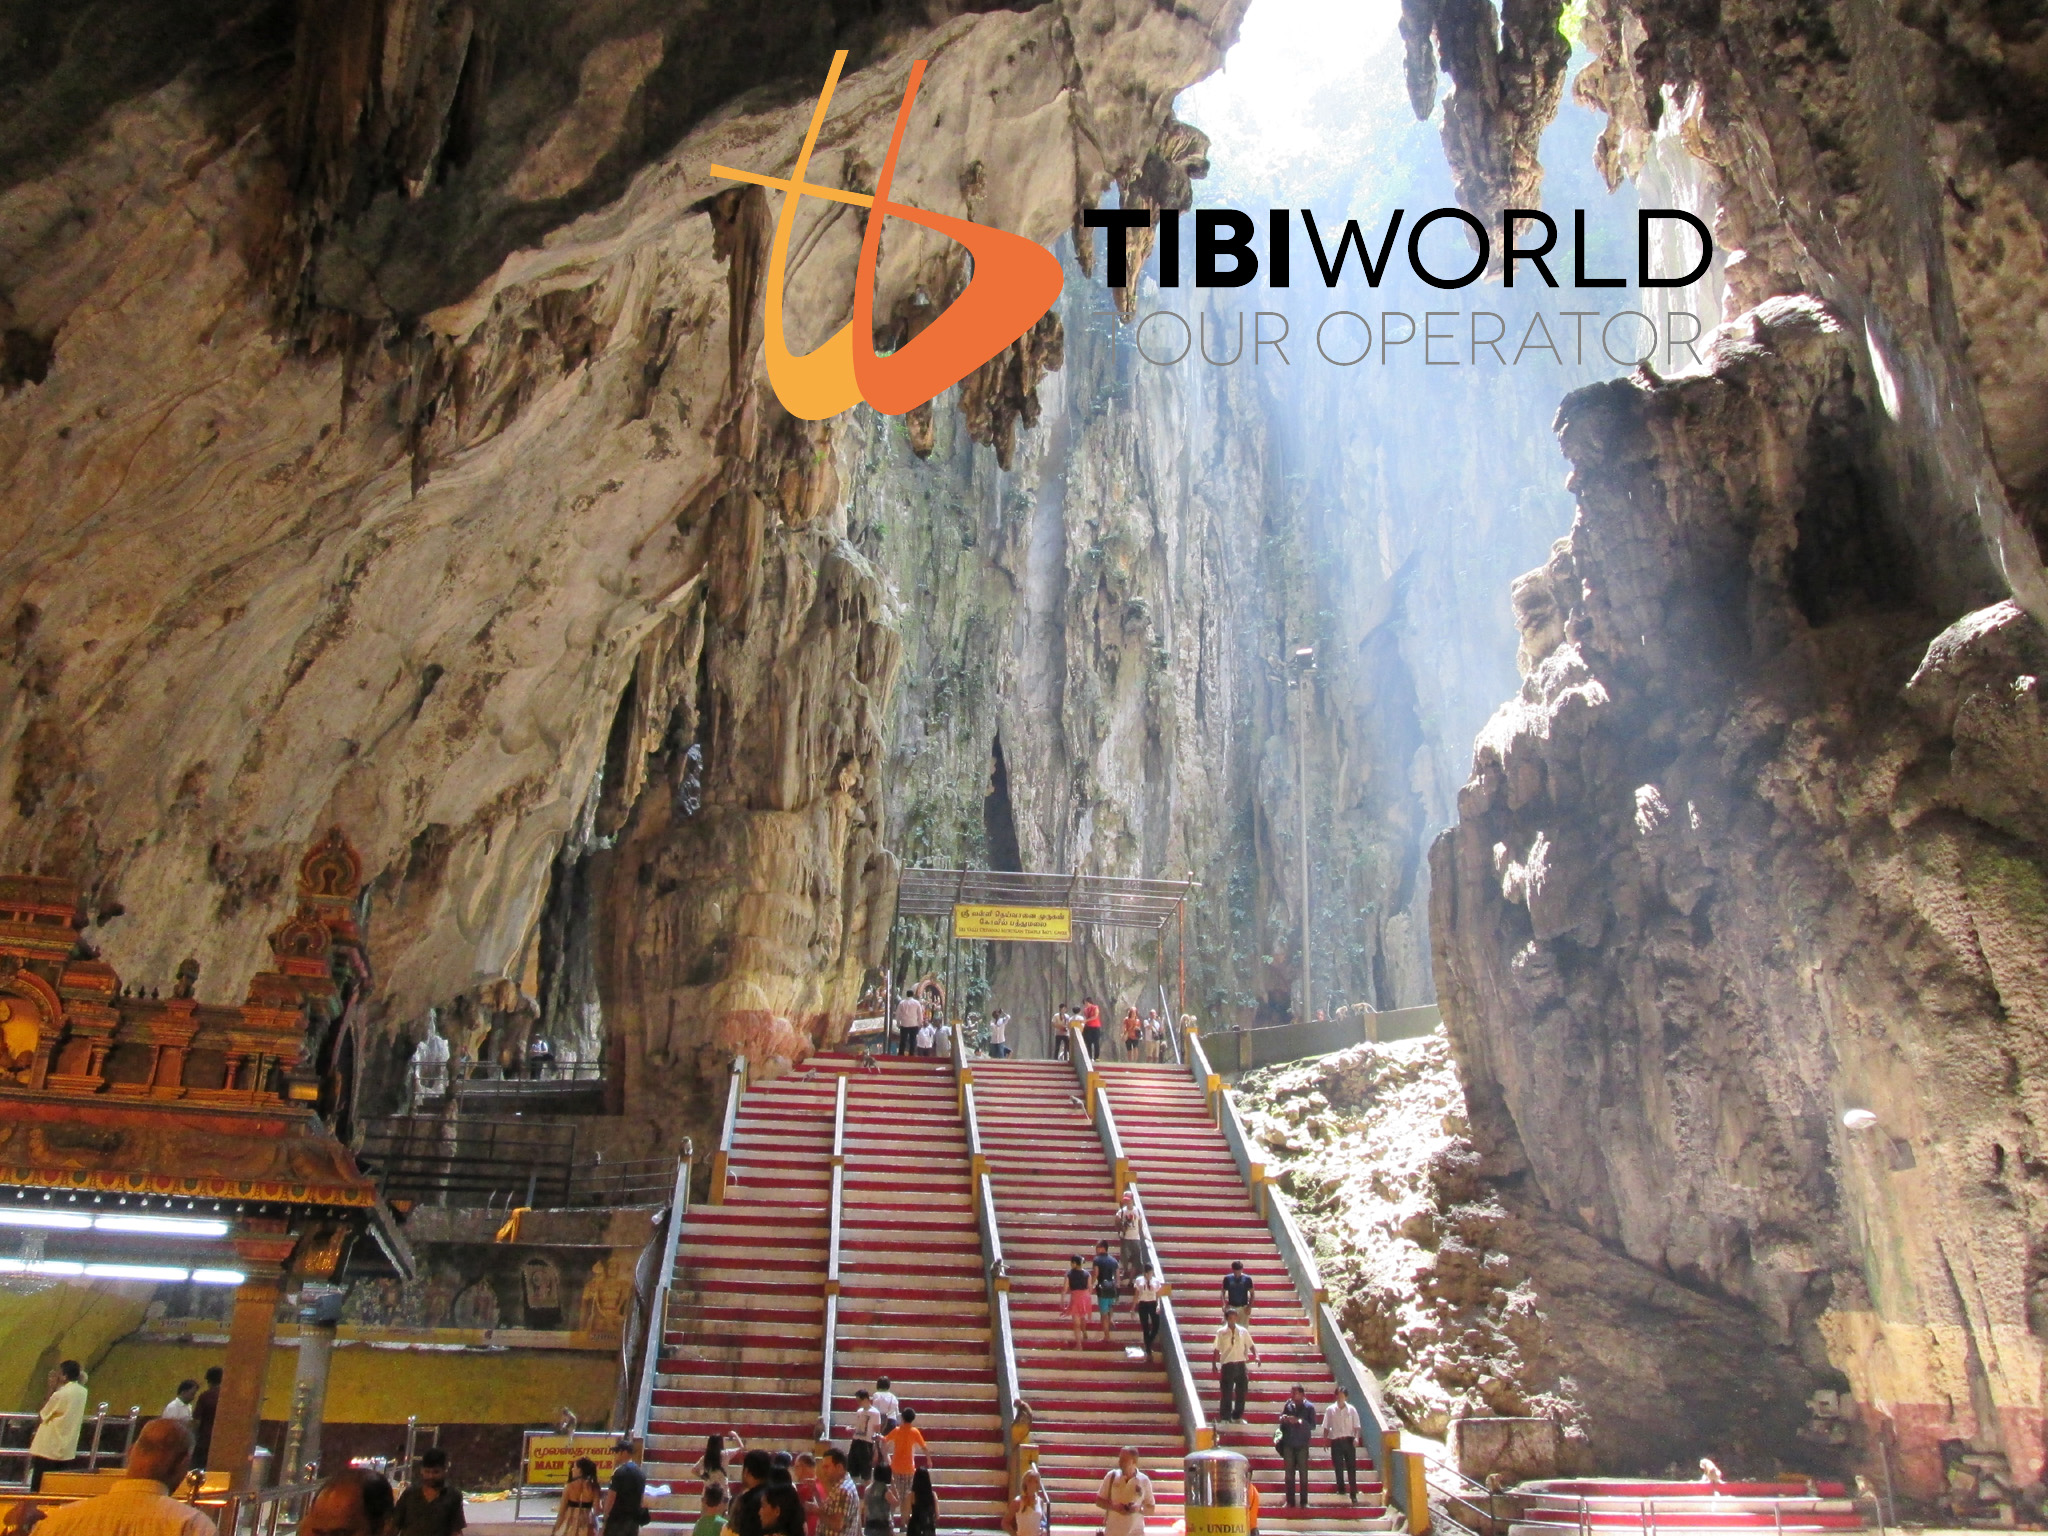 Selangor - Batu Caves una delle interessanti escursioni giornaliere che proponiamo da Kuala Lumpur